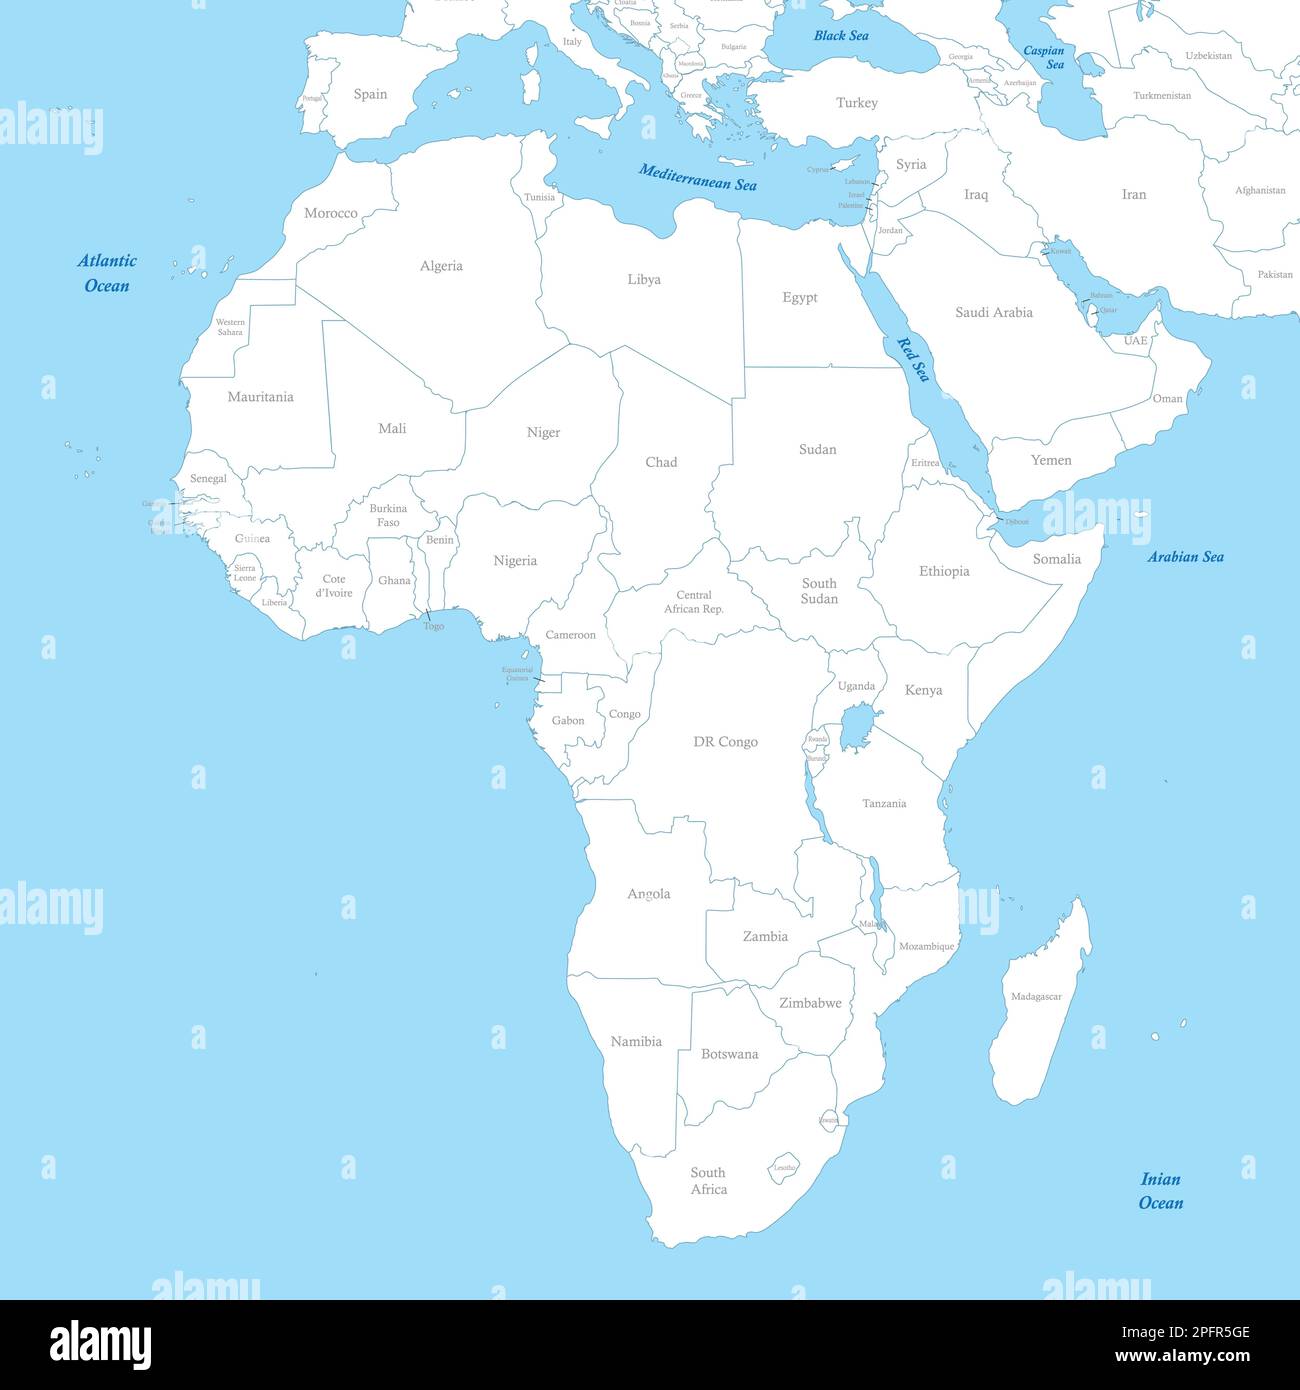 Mappa a colori politica dell'Africa con i confini degli stati. Illustrazione Vettoriale